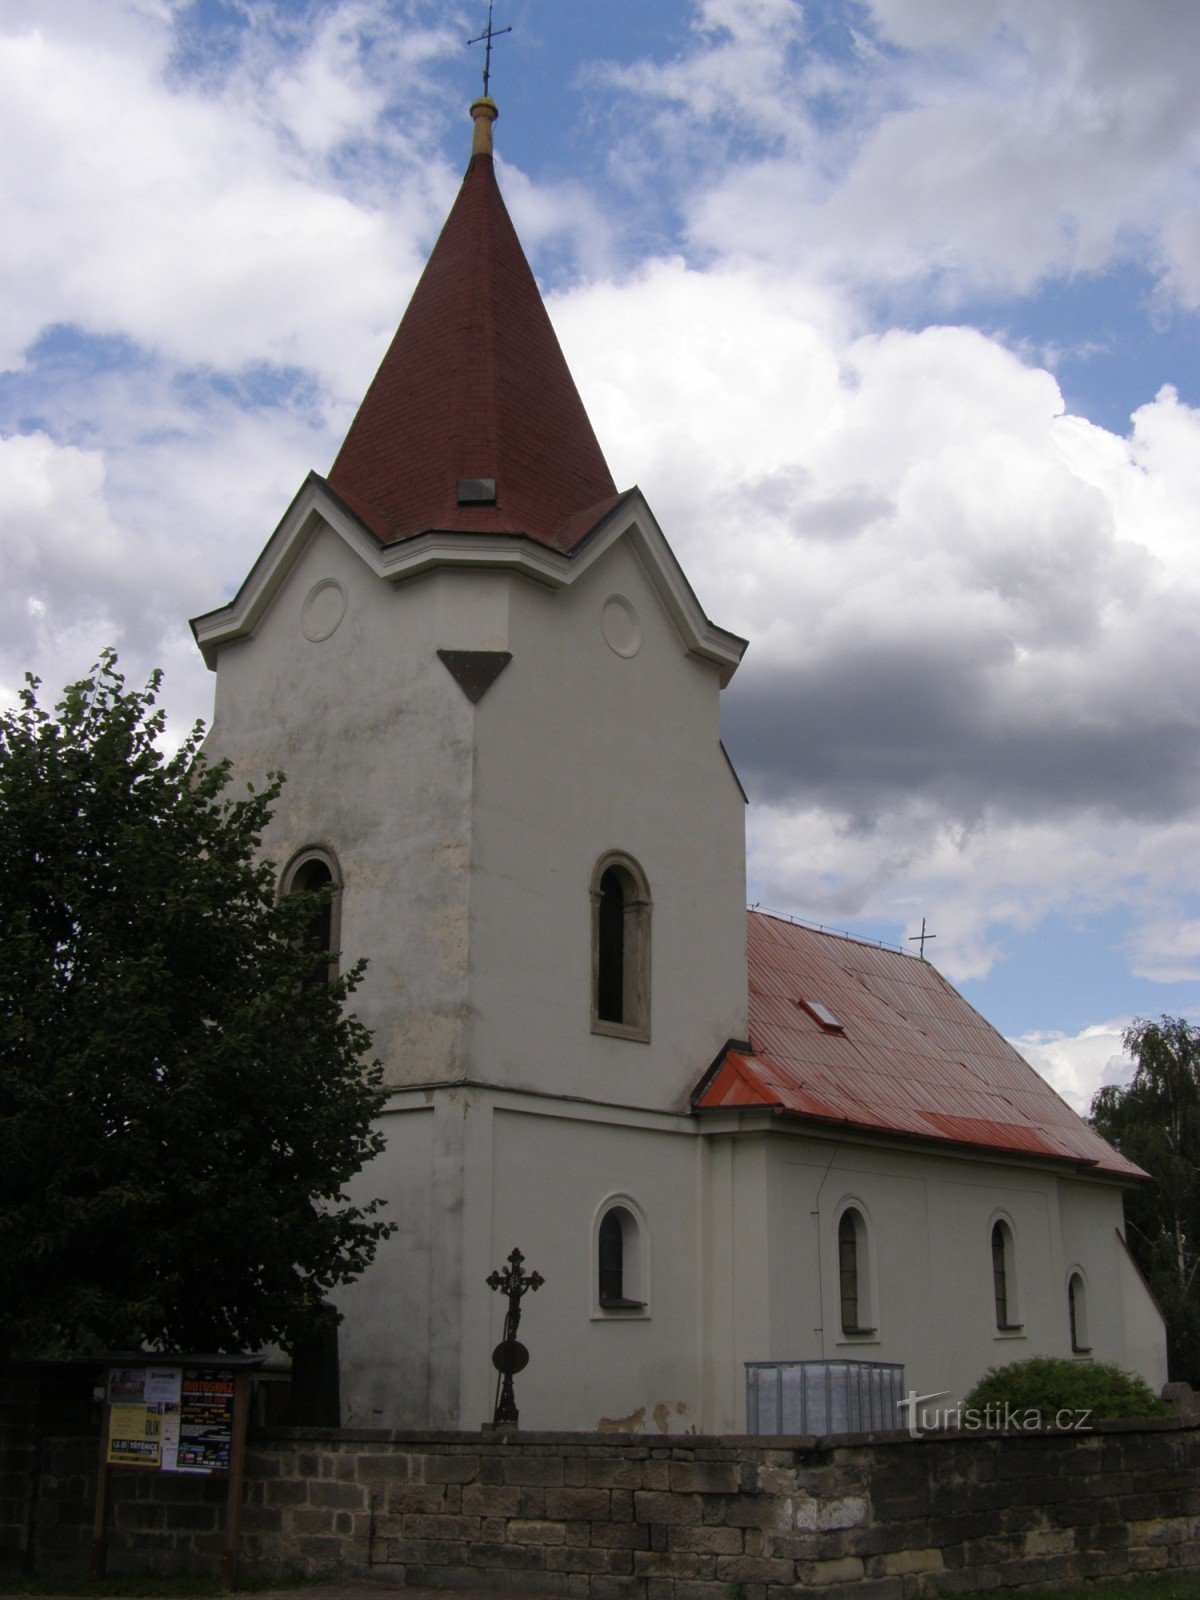 Stari grad - crkva sv. Franje